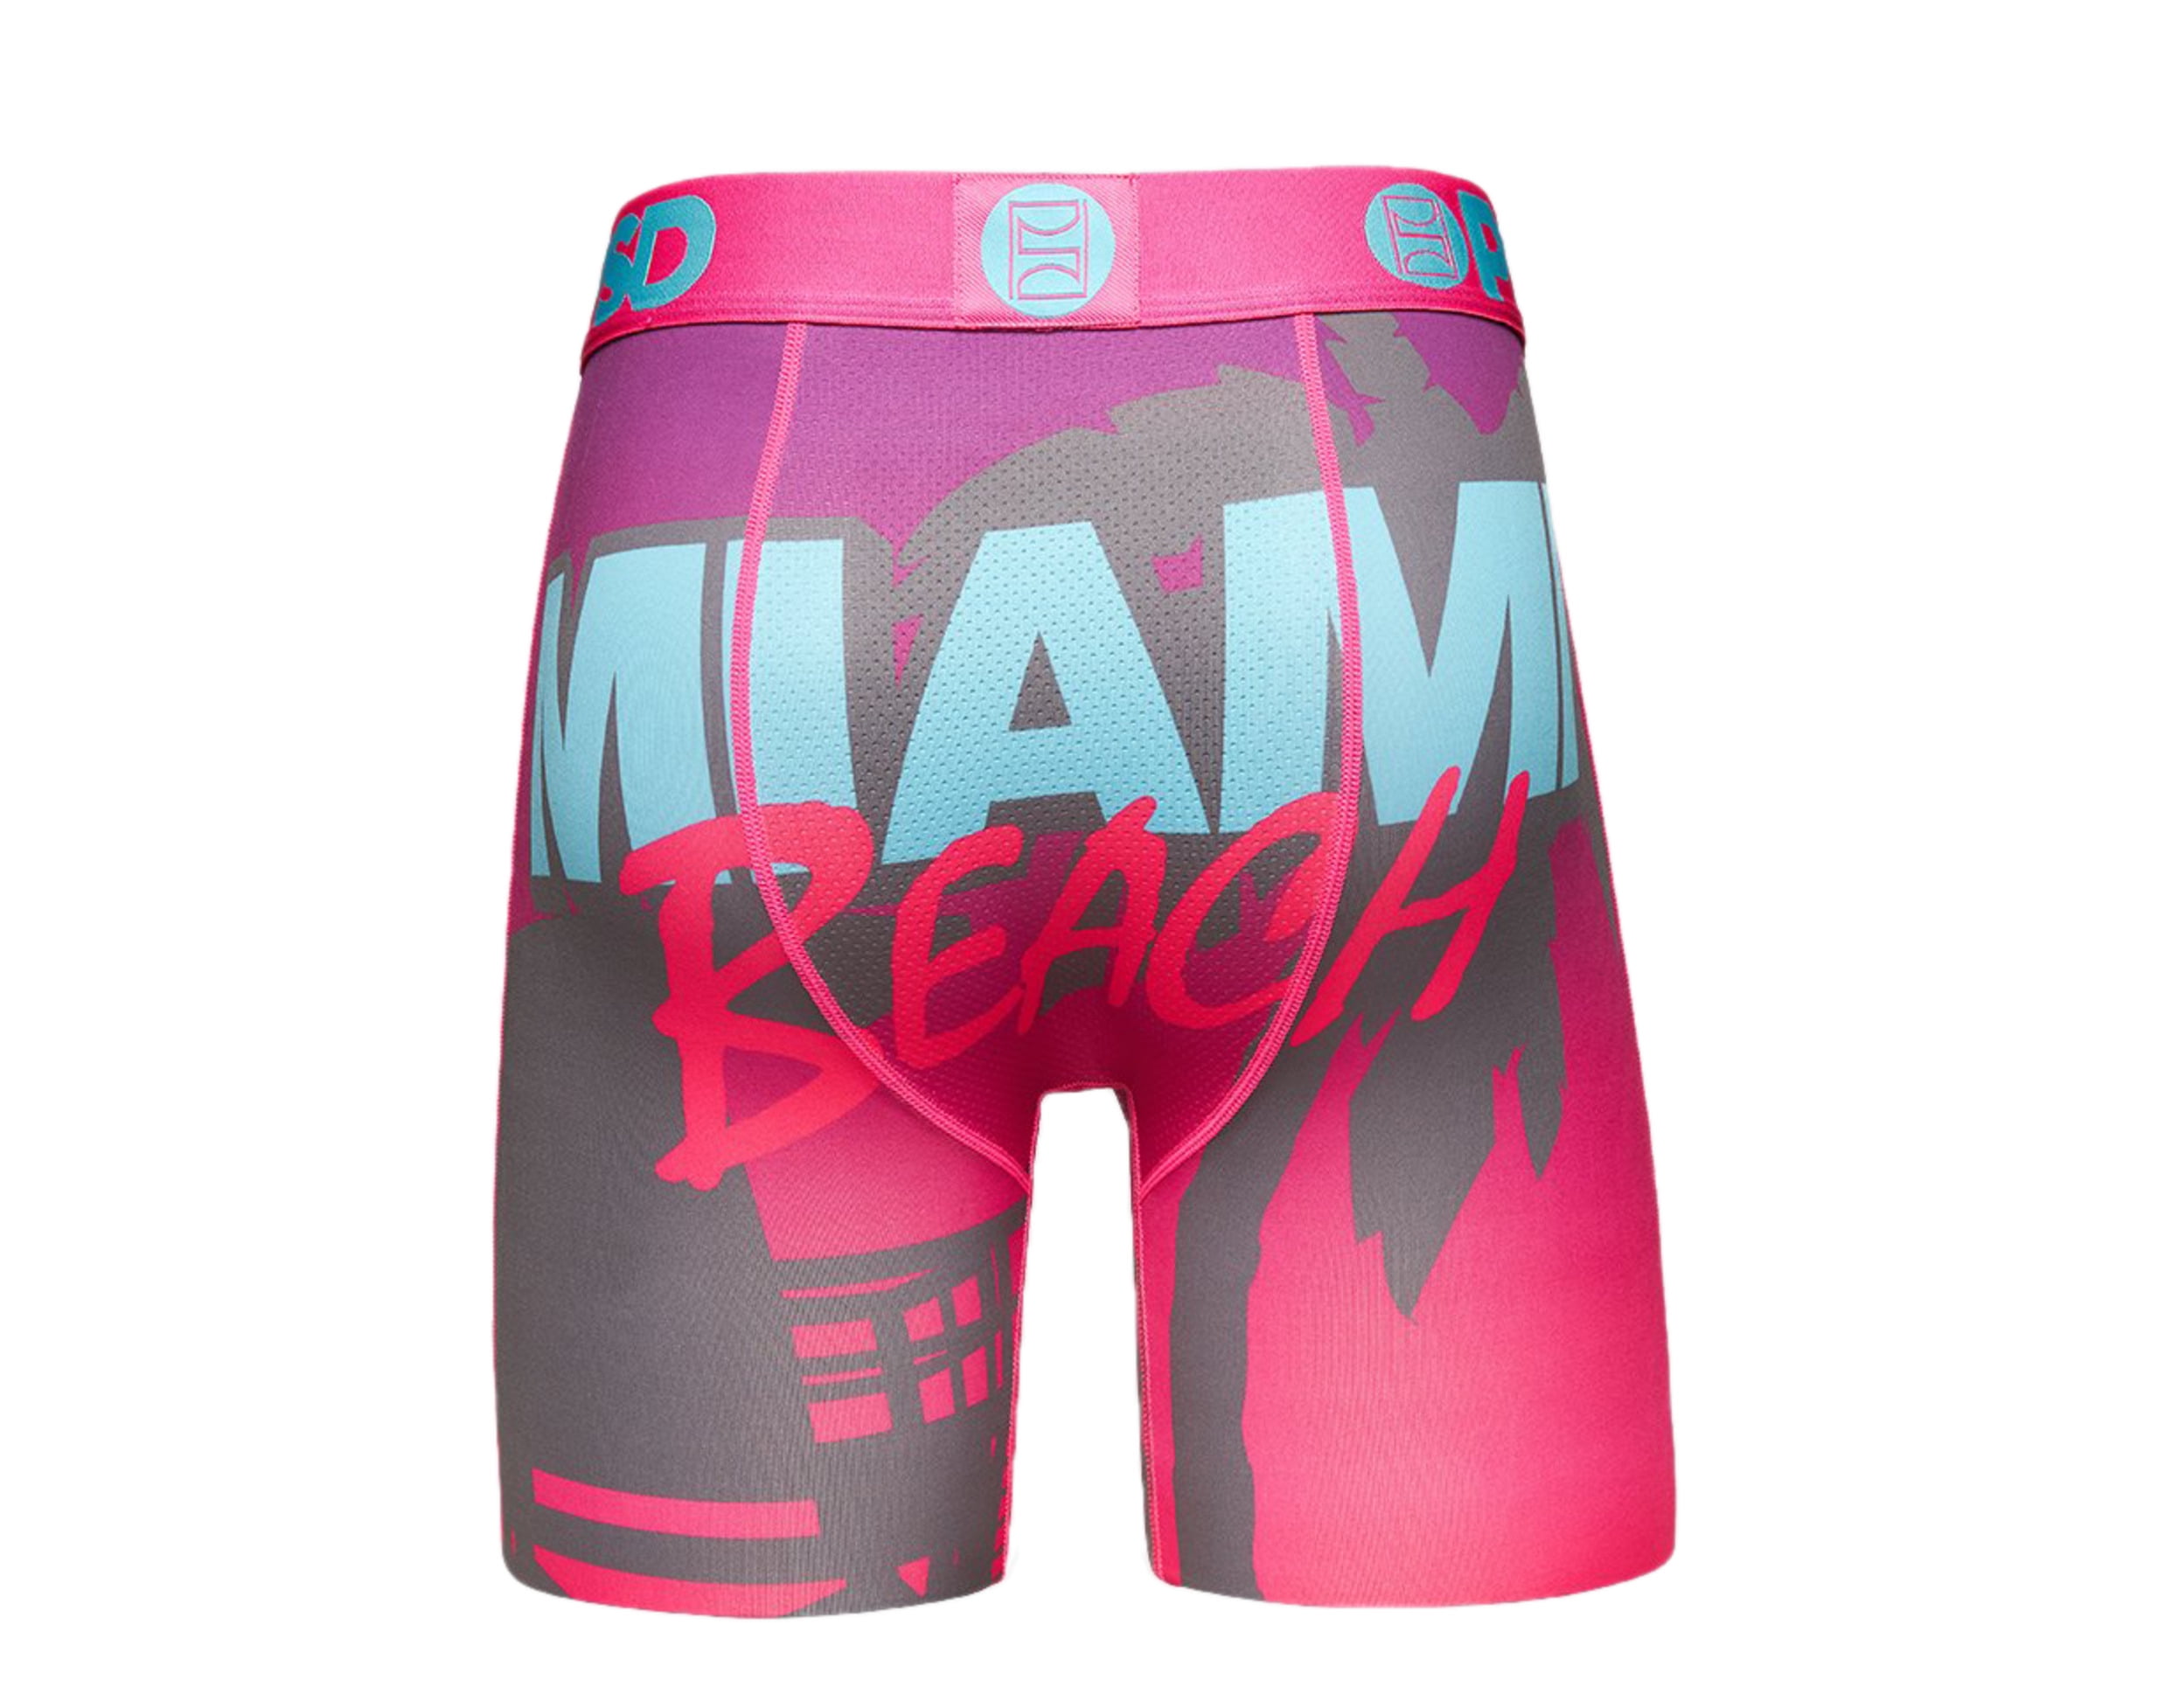 PSD Miami Beach Boxer Briefs Men's Underwear Large